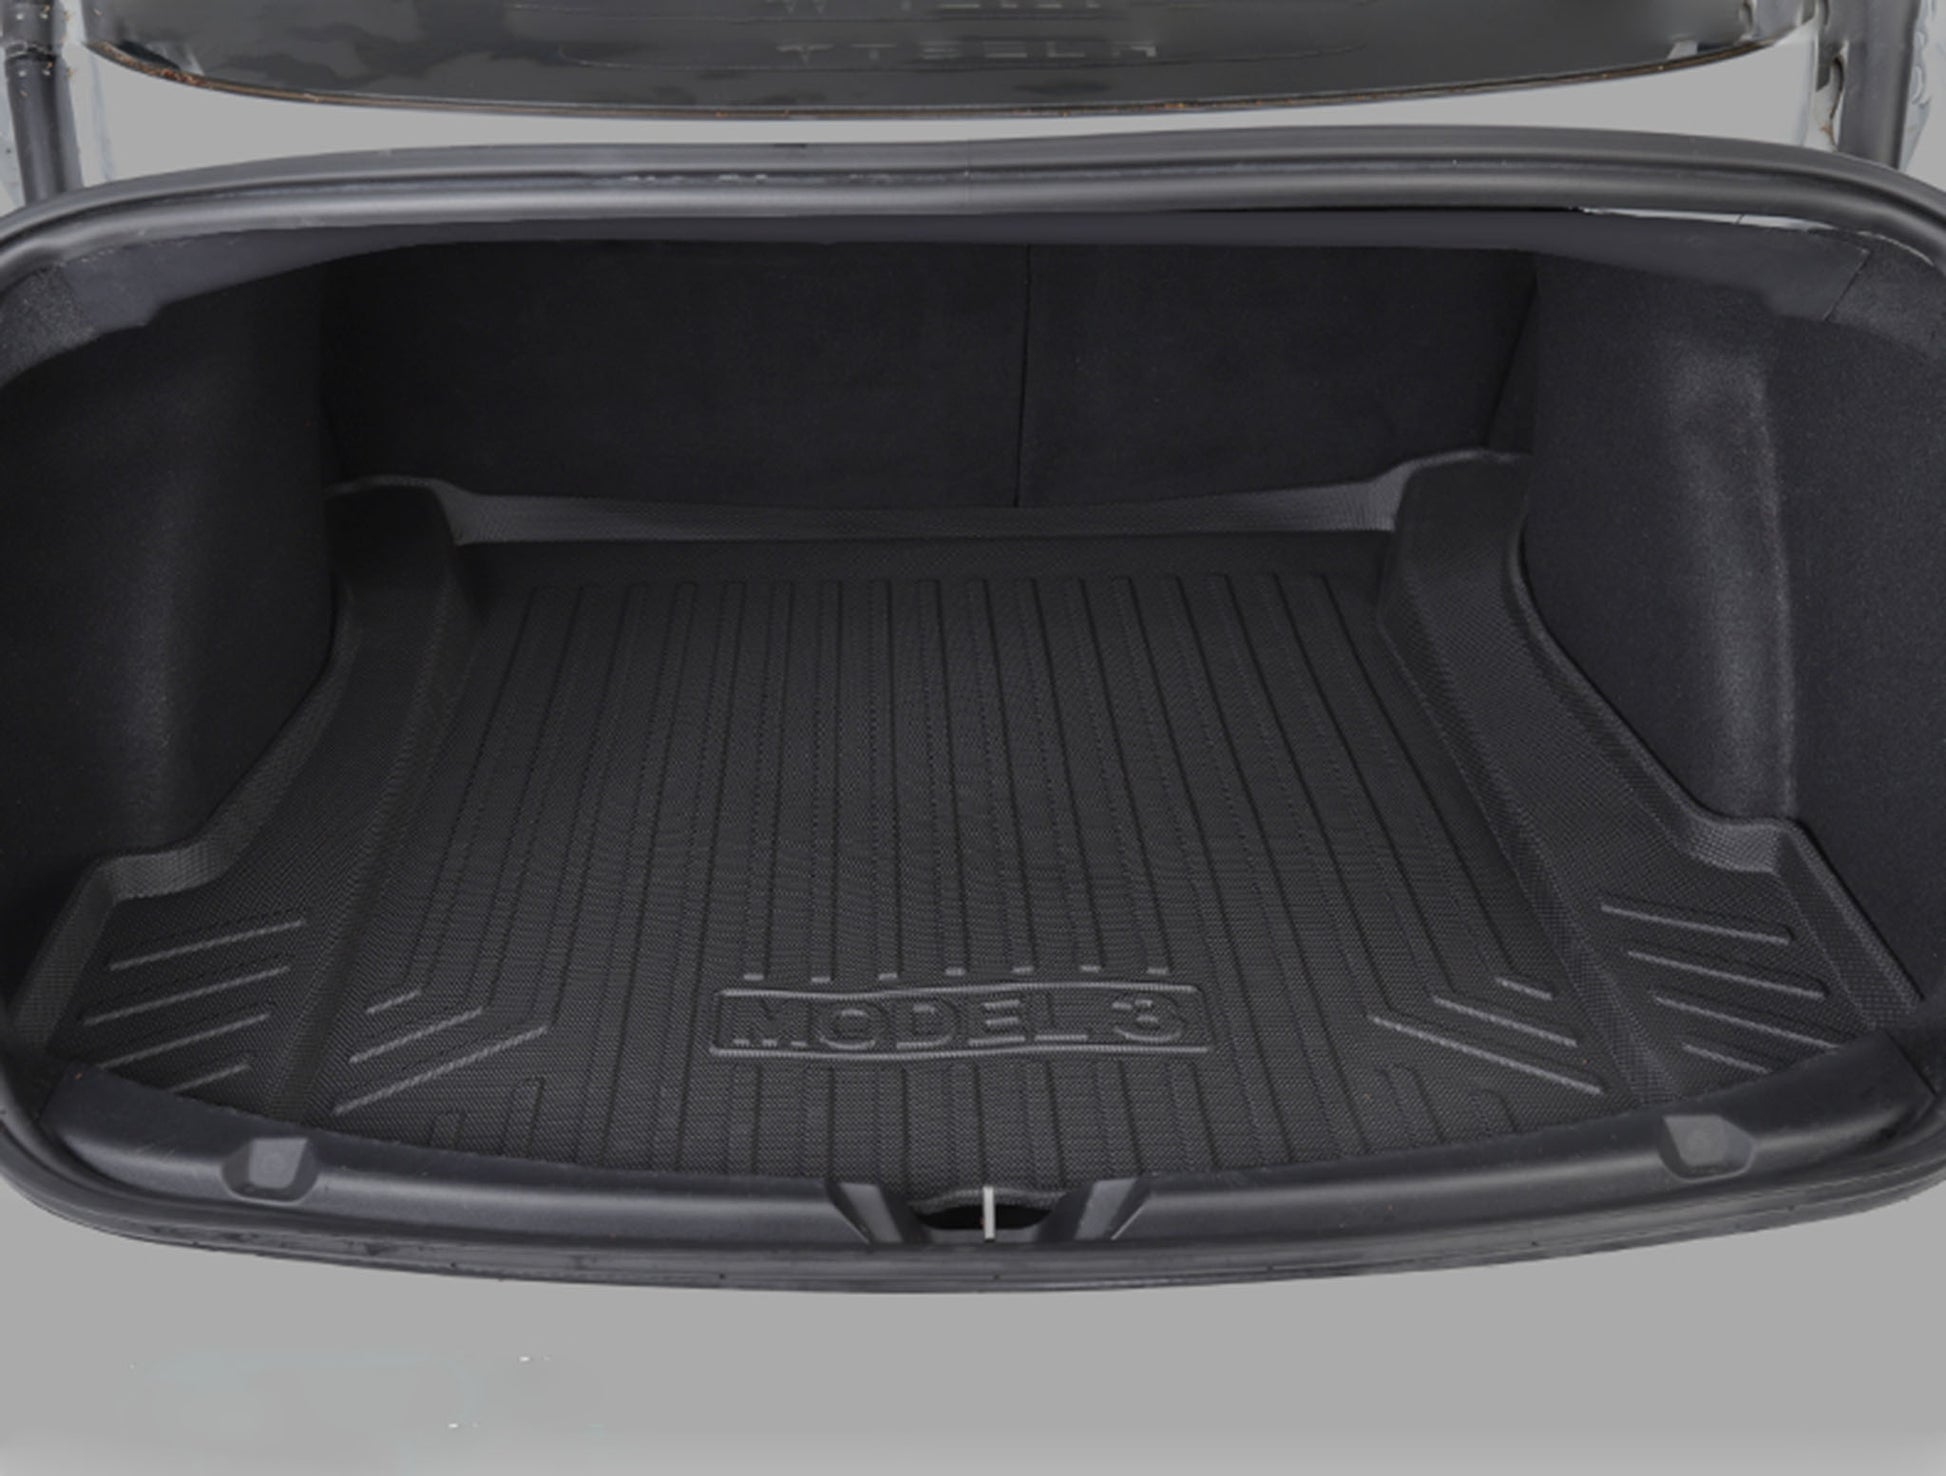 Rear Trunk Mat For Tesla Model 3-Motor Vehicle Carpet & Upholstery-Yeslak